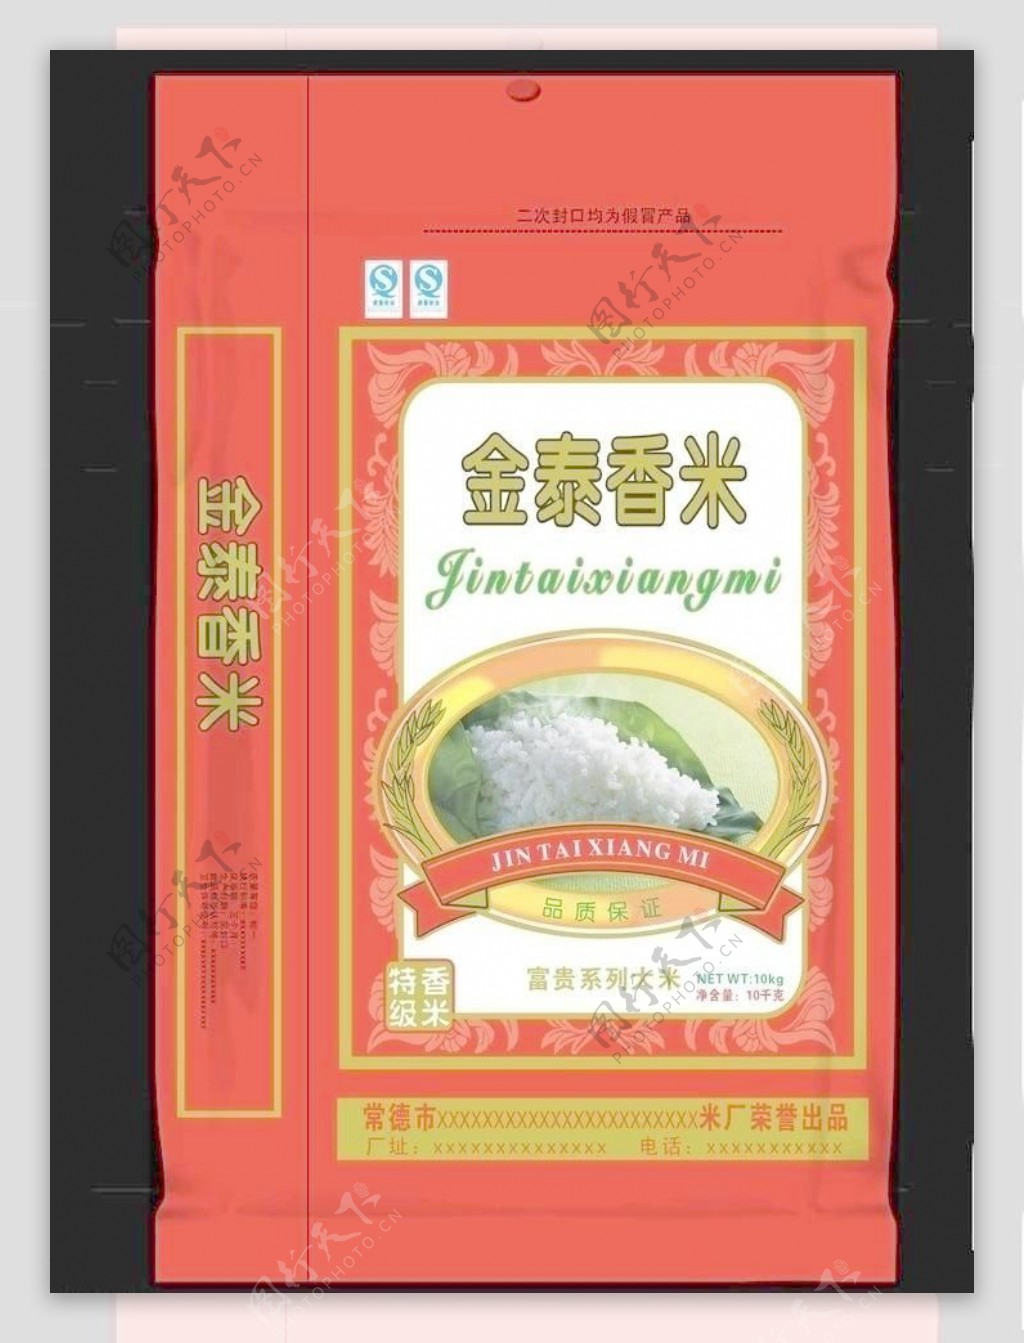 大米包装金泰香米图片